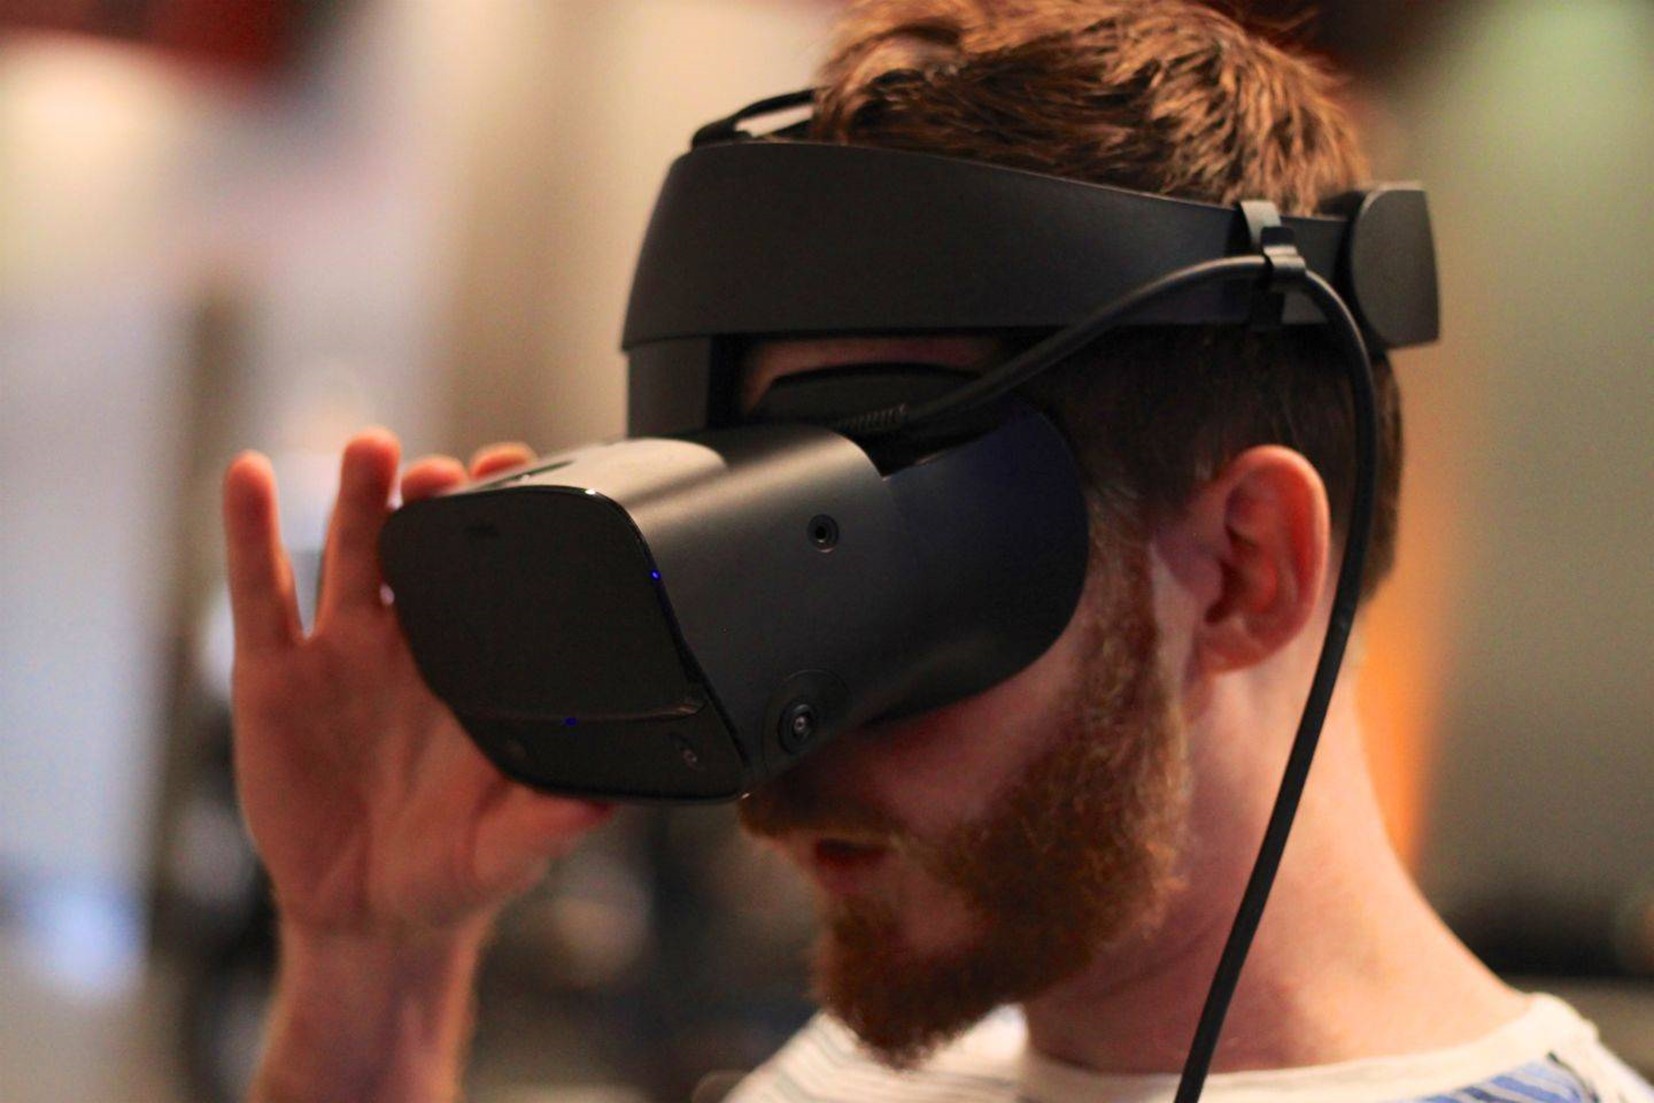 Oculus 3 pro. ВР шлем Oculus. VR очки Oculus Rift. Шлем Oculus Rift s. ВР очки Oculus Rift s.